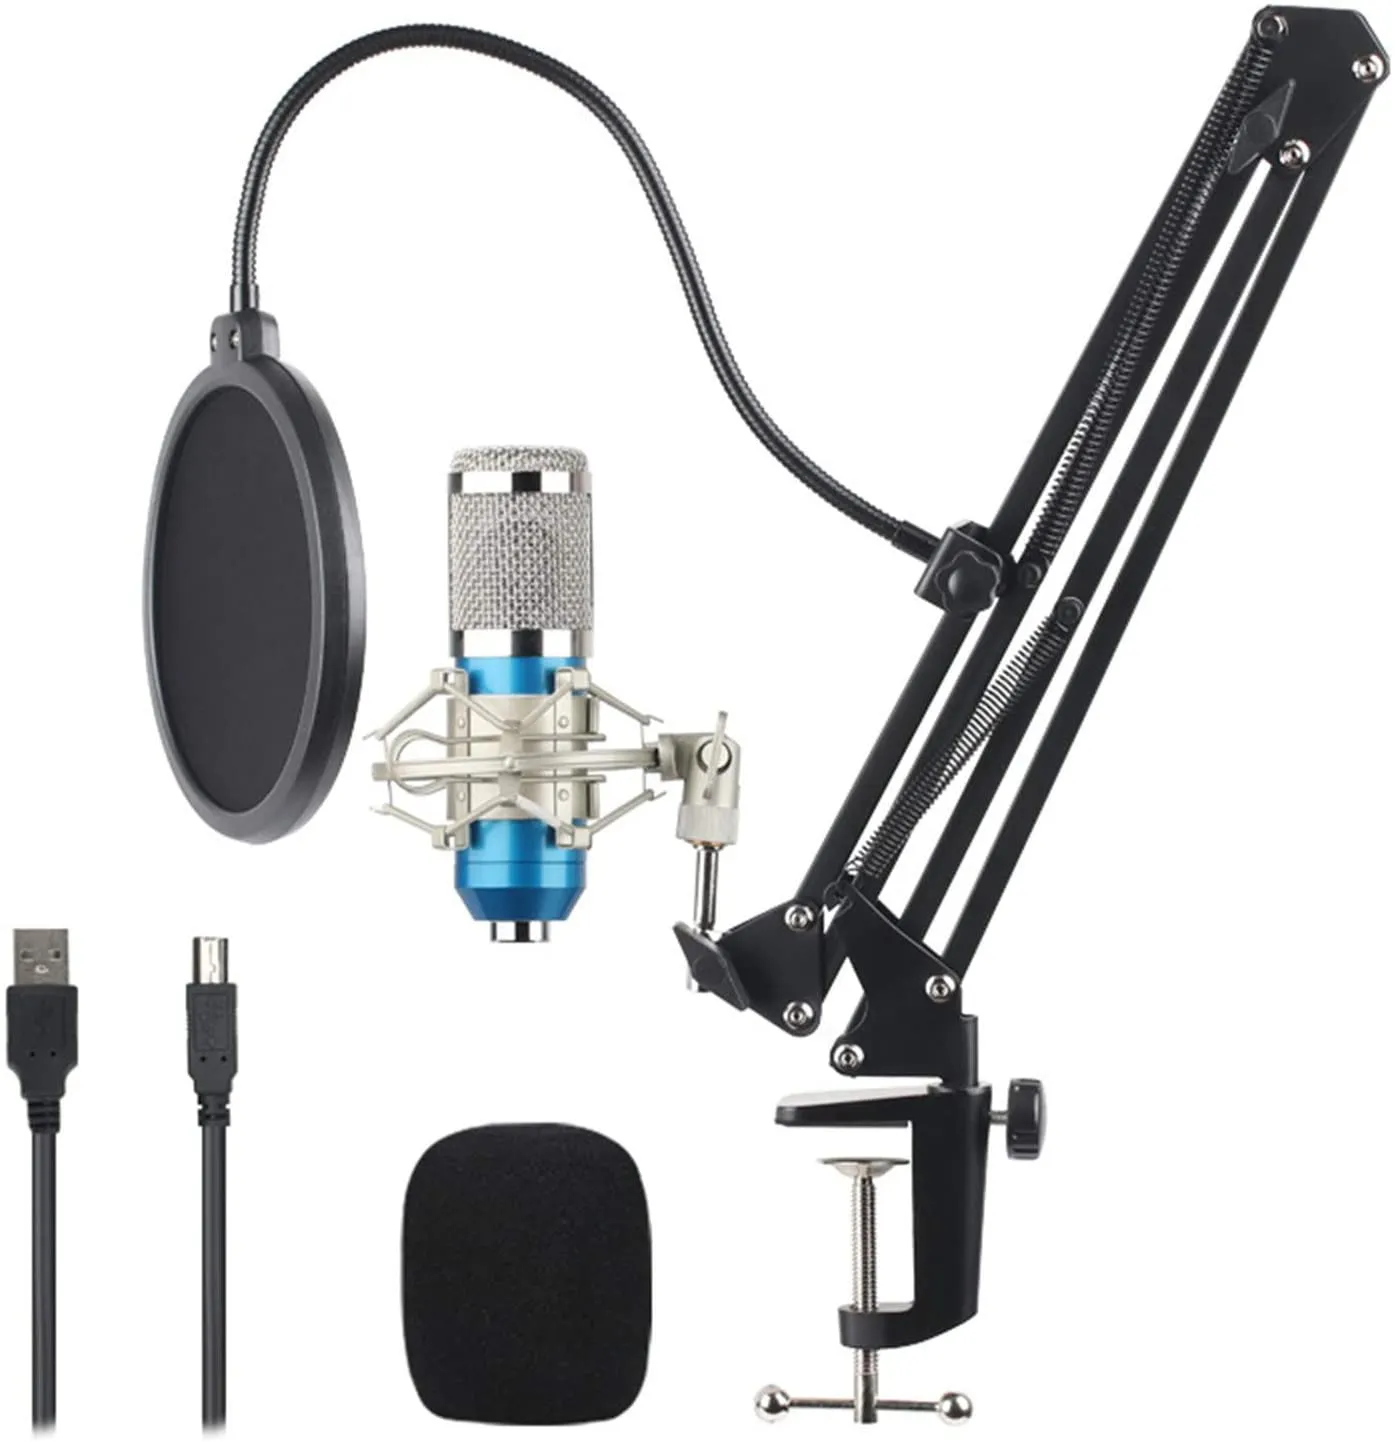 Microfono a condensatore per podcast 192kHZ/24bit, kit microfono cardioide professionale con braccio, supporto antivibrazione, filtro pop e parabrezza(Blu)